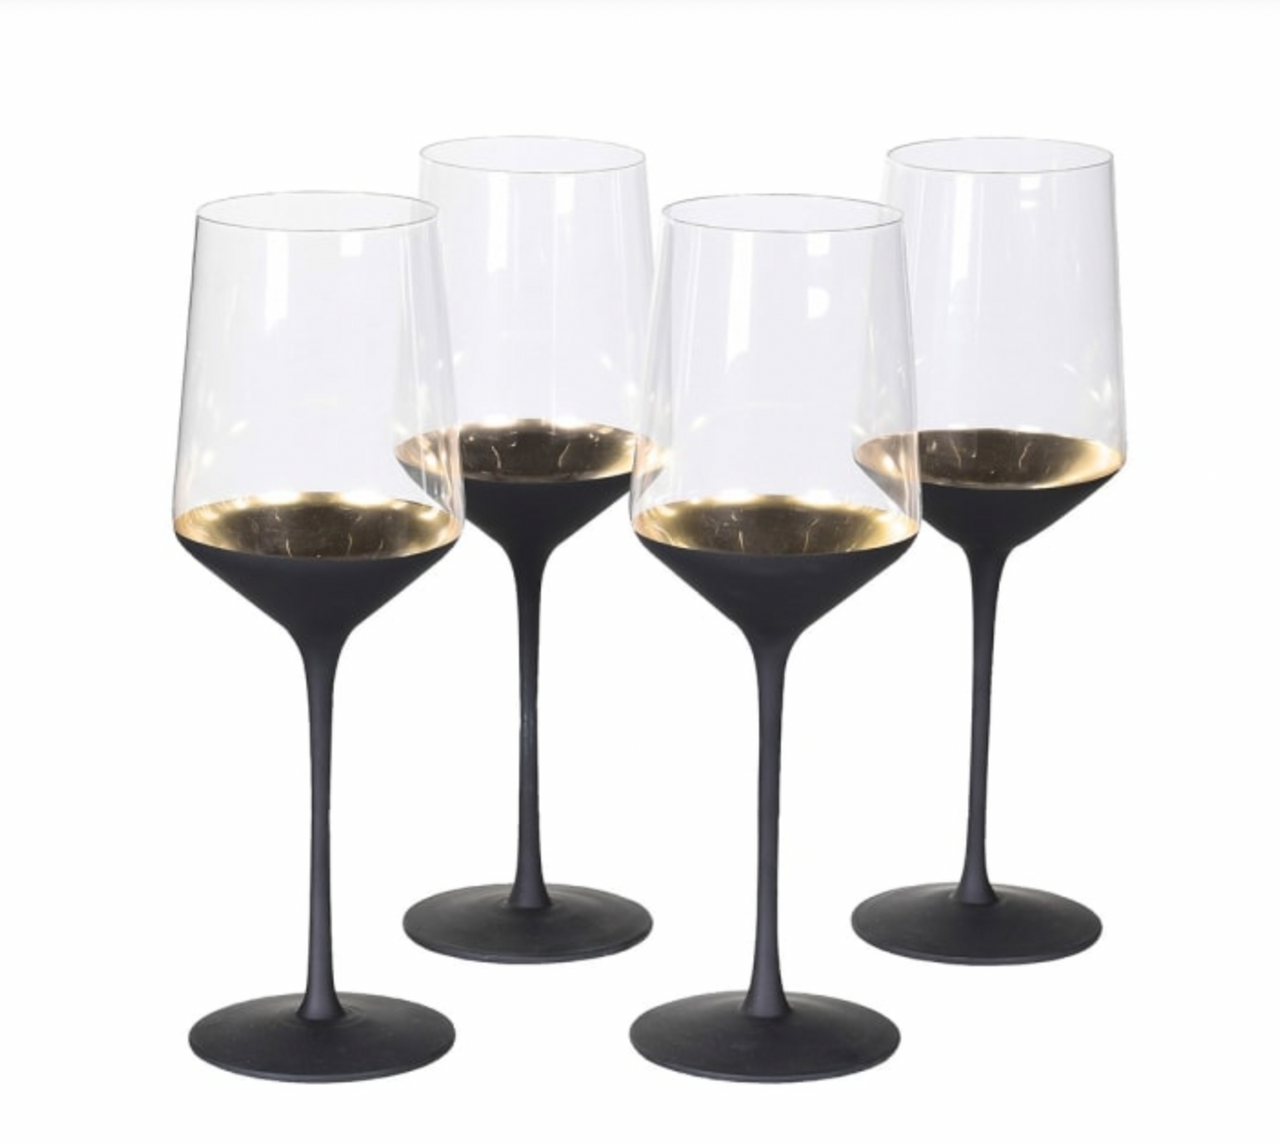 Set of 4 Black and Gold Stemmed Wine Glasses